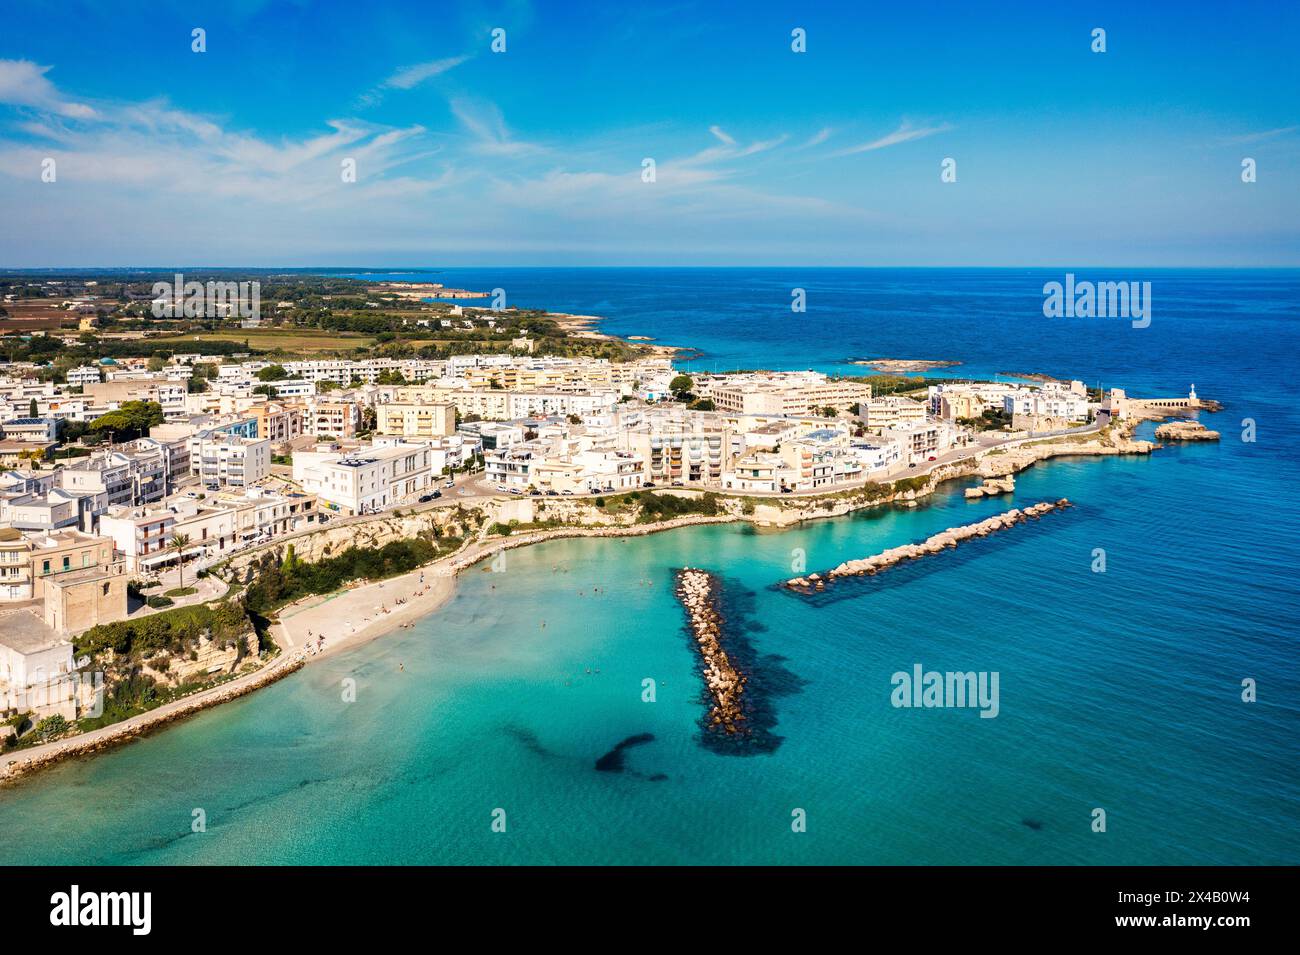 Aus der Vogelperspektive der Stadt Otranto auf der Halbinsel Salento im Süden Italiens, der östlichsten Stadt Italiens (Apulien) an der Küste der Adria. Ansicht Stockfoto